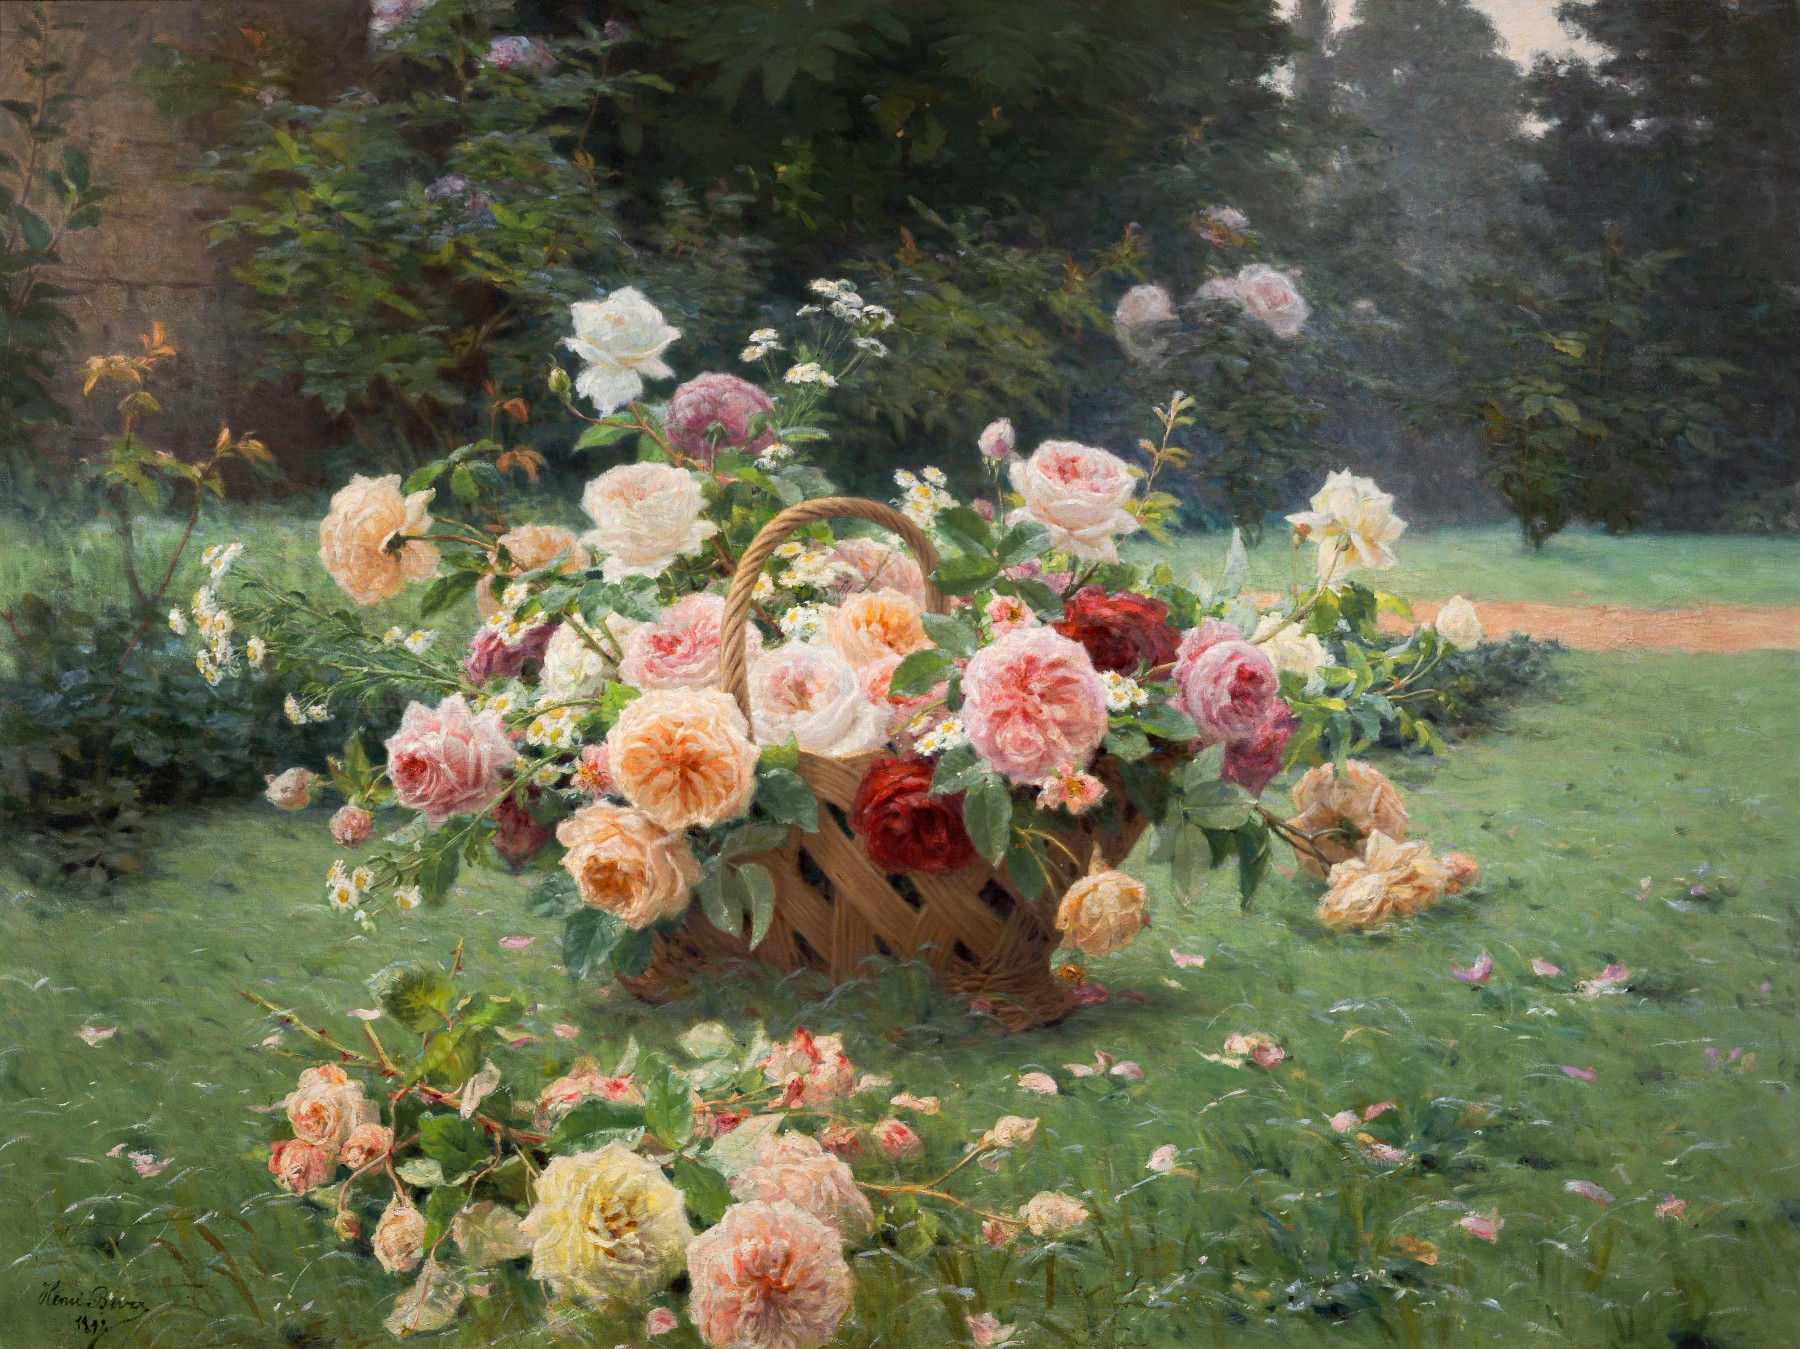 La cesta de rosas by Henri Biva - 1891 - 160 x 120 cm Colección privada